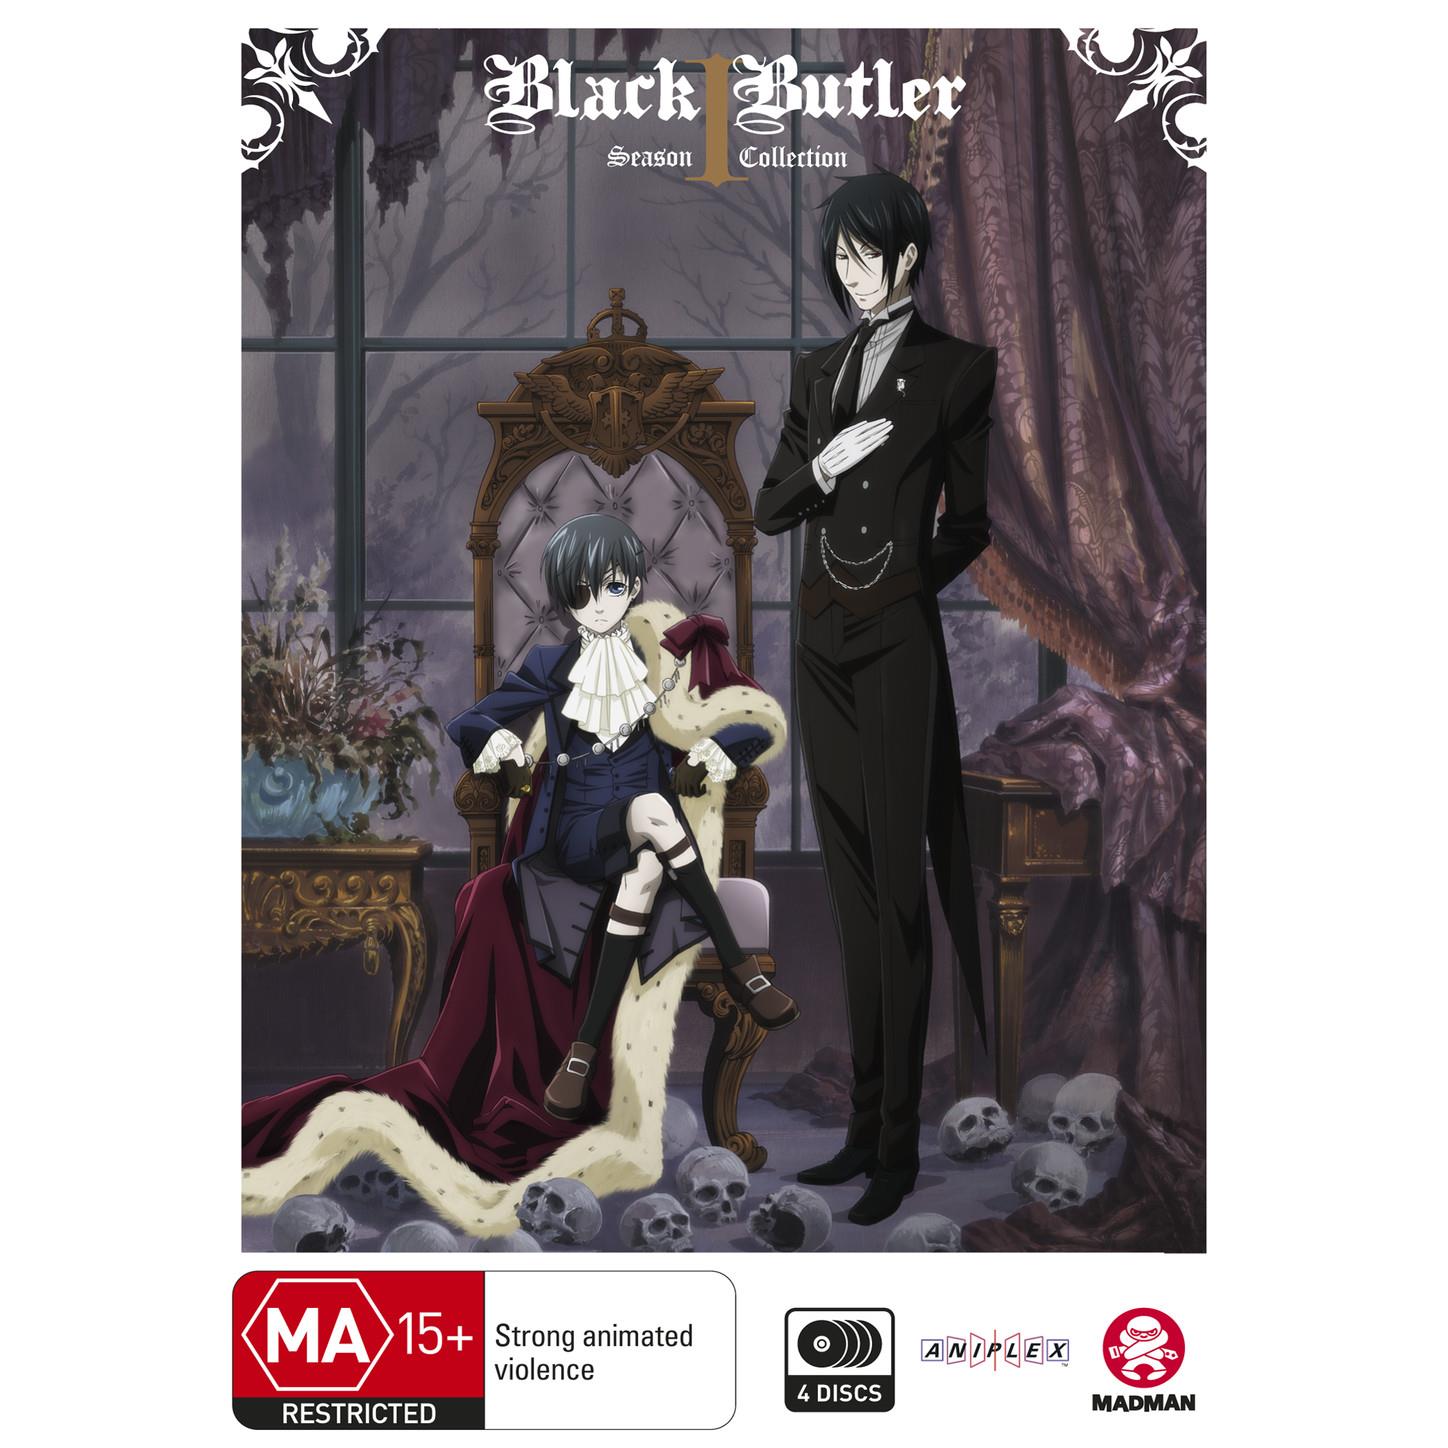 New Black Butler Anime Series Announced For 2024 - Noisy Pixel